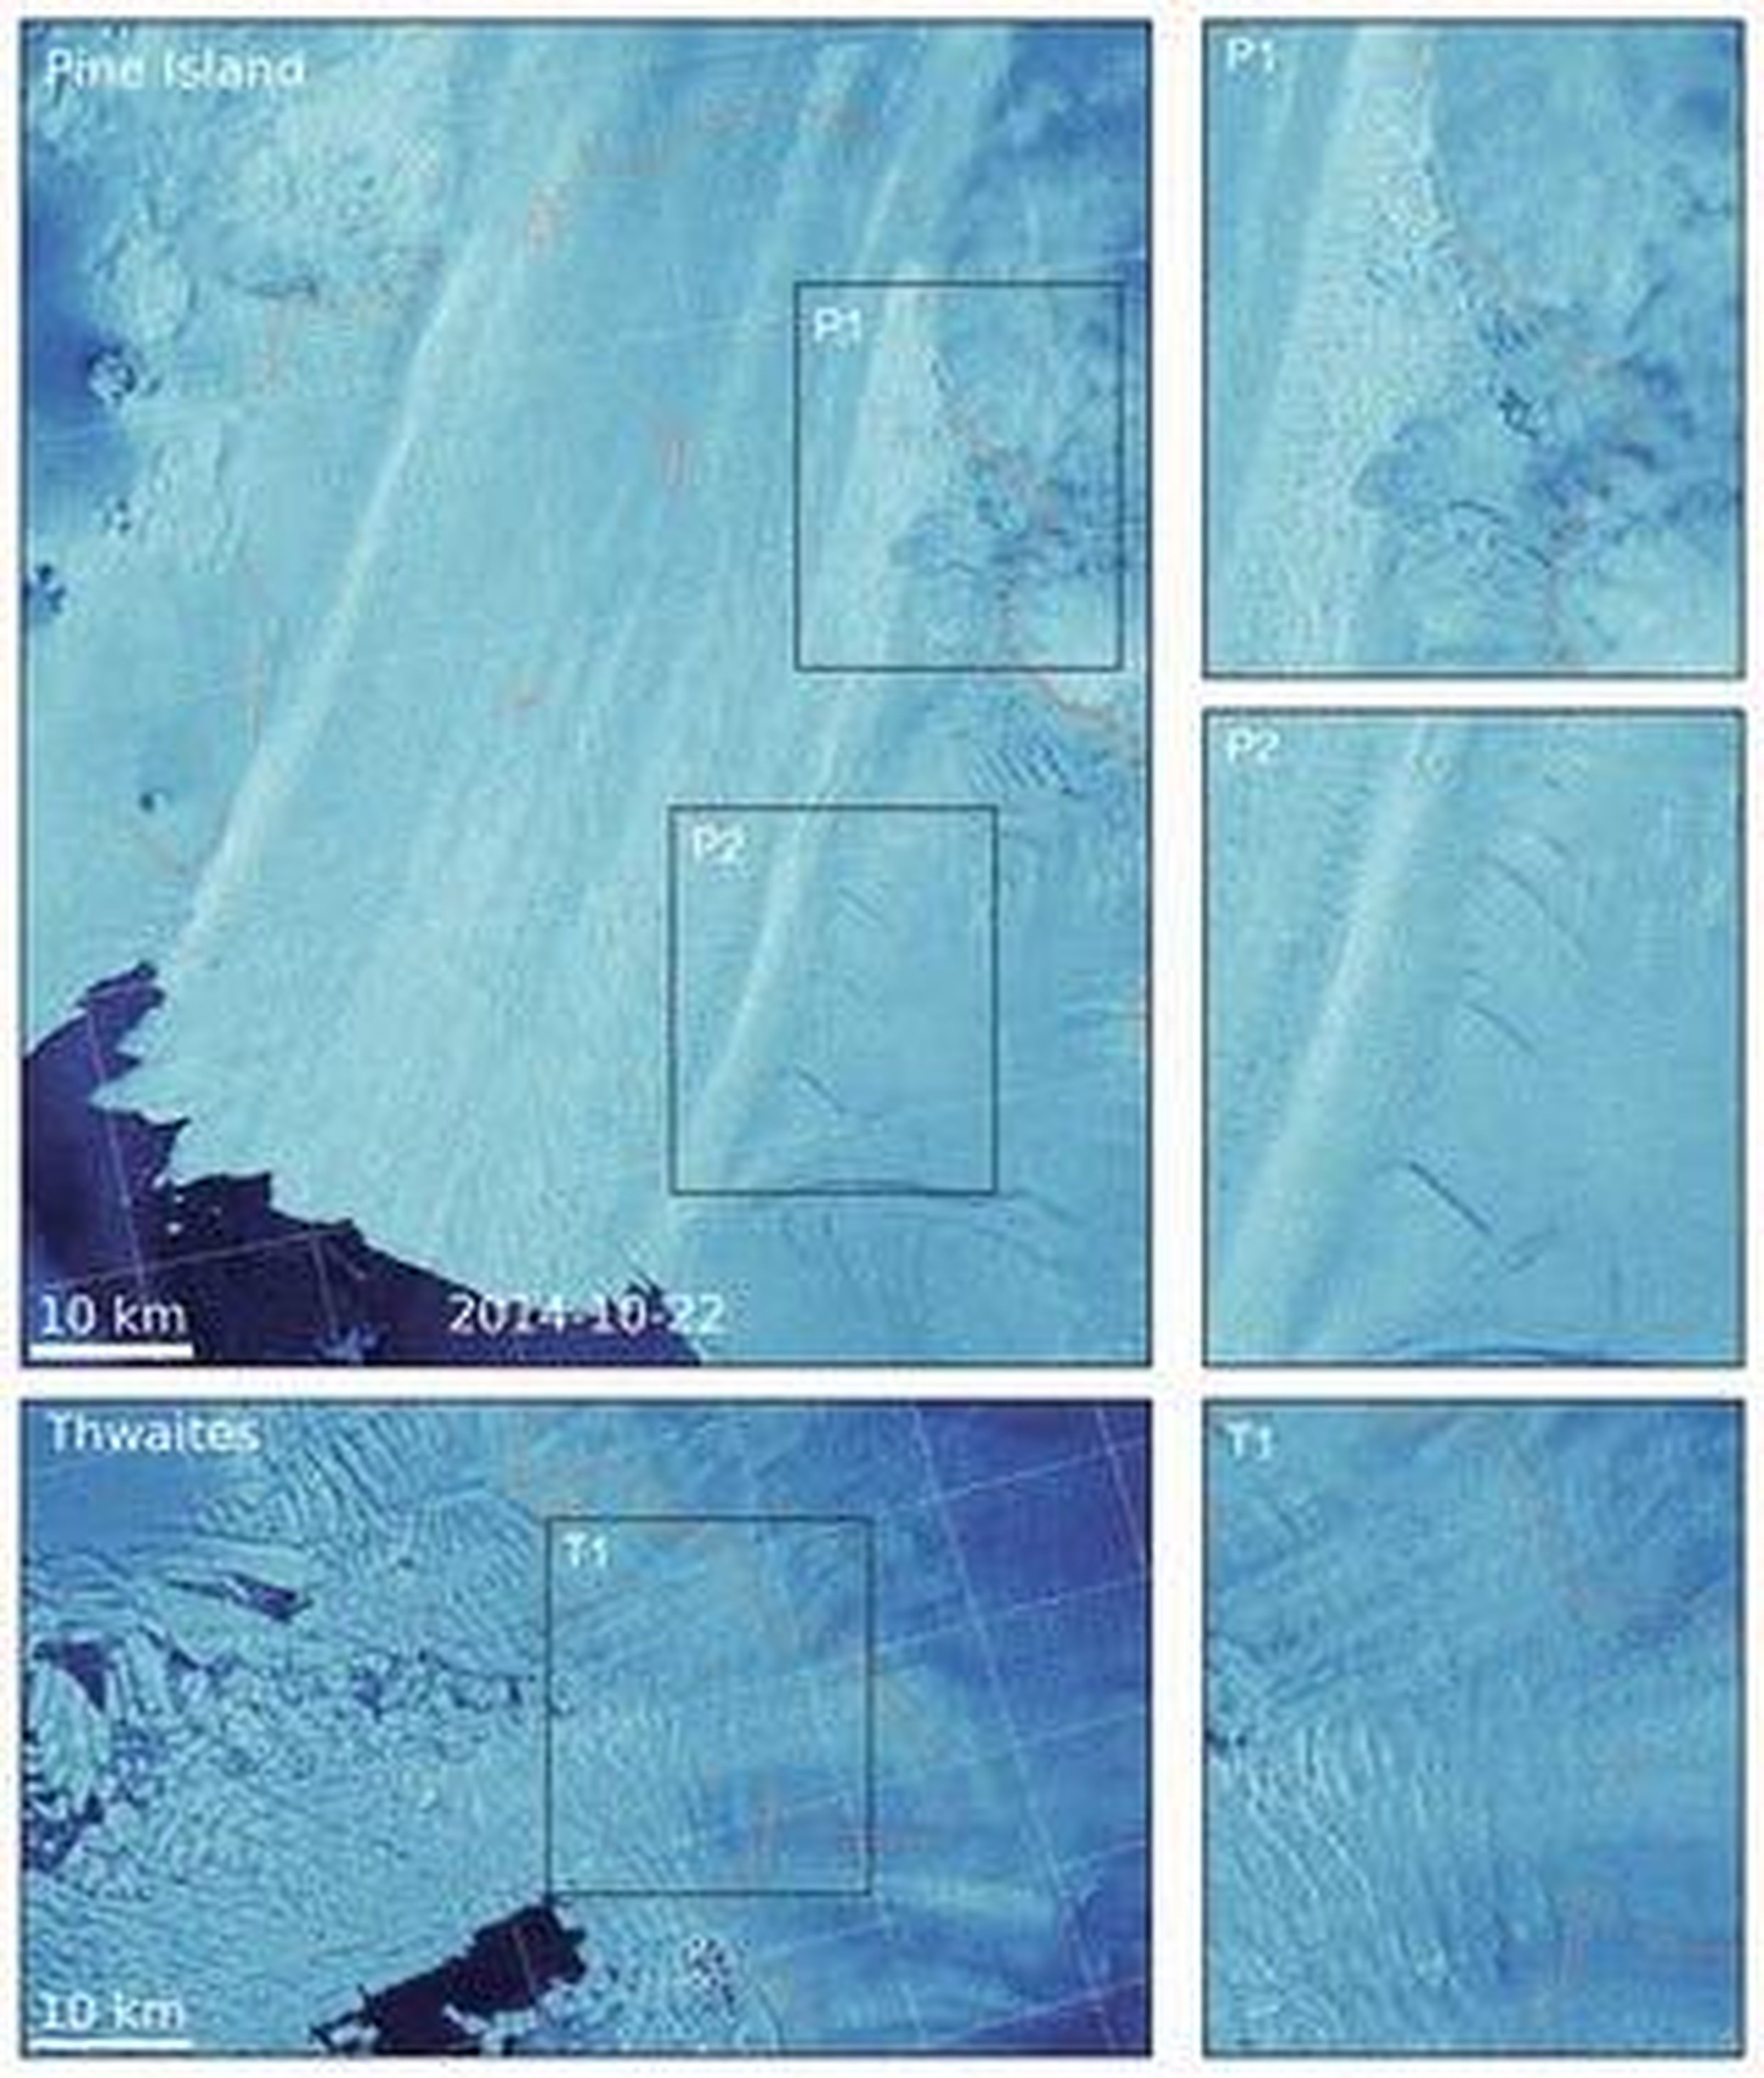 Las imágenes de satélite muestran la extensión del daño a los glaciares Thwaites y Pine Island, y el desgarro de sus zonas de cizallamiento.